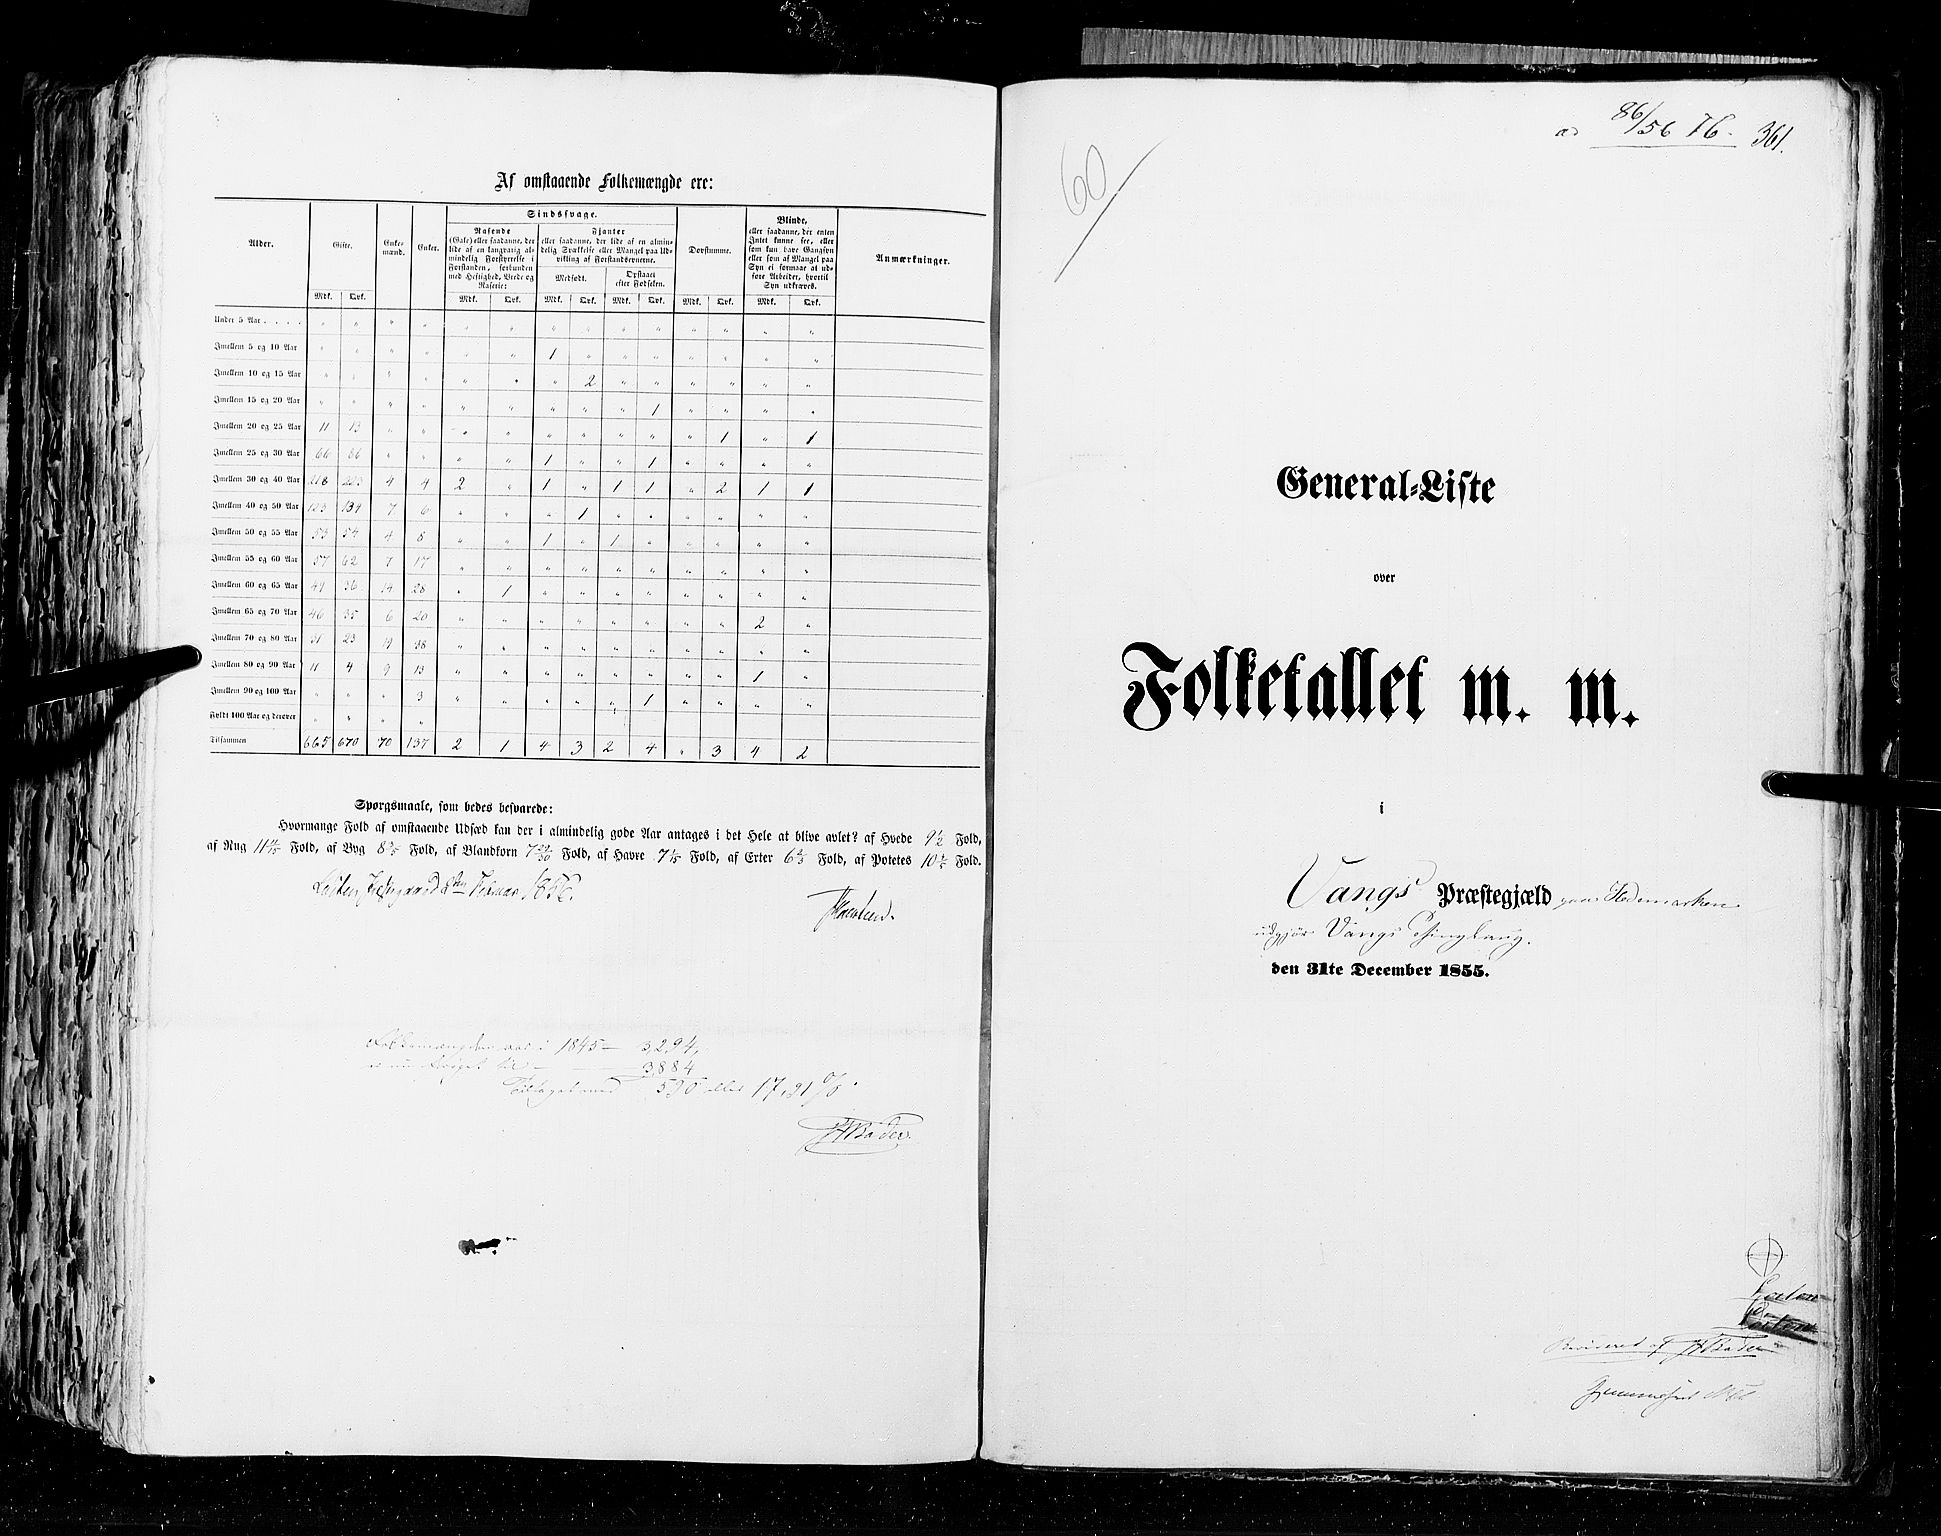 RA, Folketellingen 1855, bind 1: Akershus amt, Smålenenes amt og Hedemarken amt, 1855, s. 361